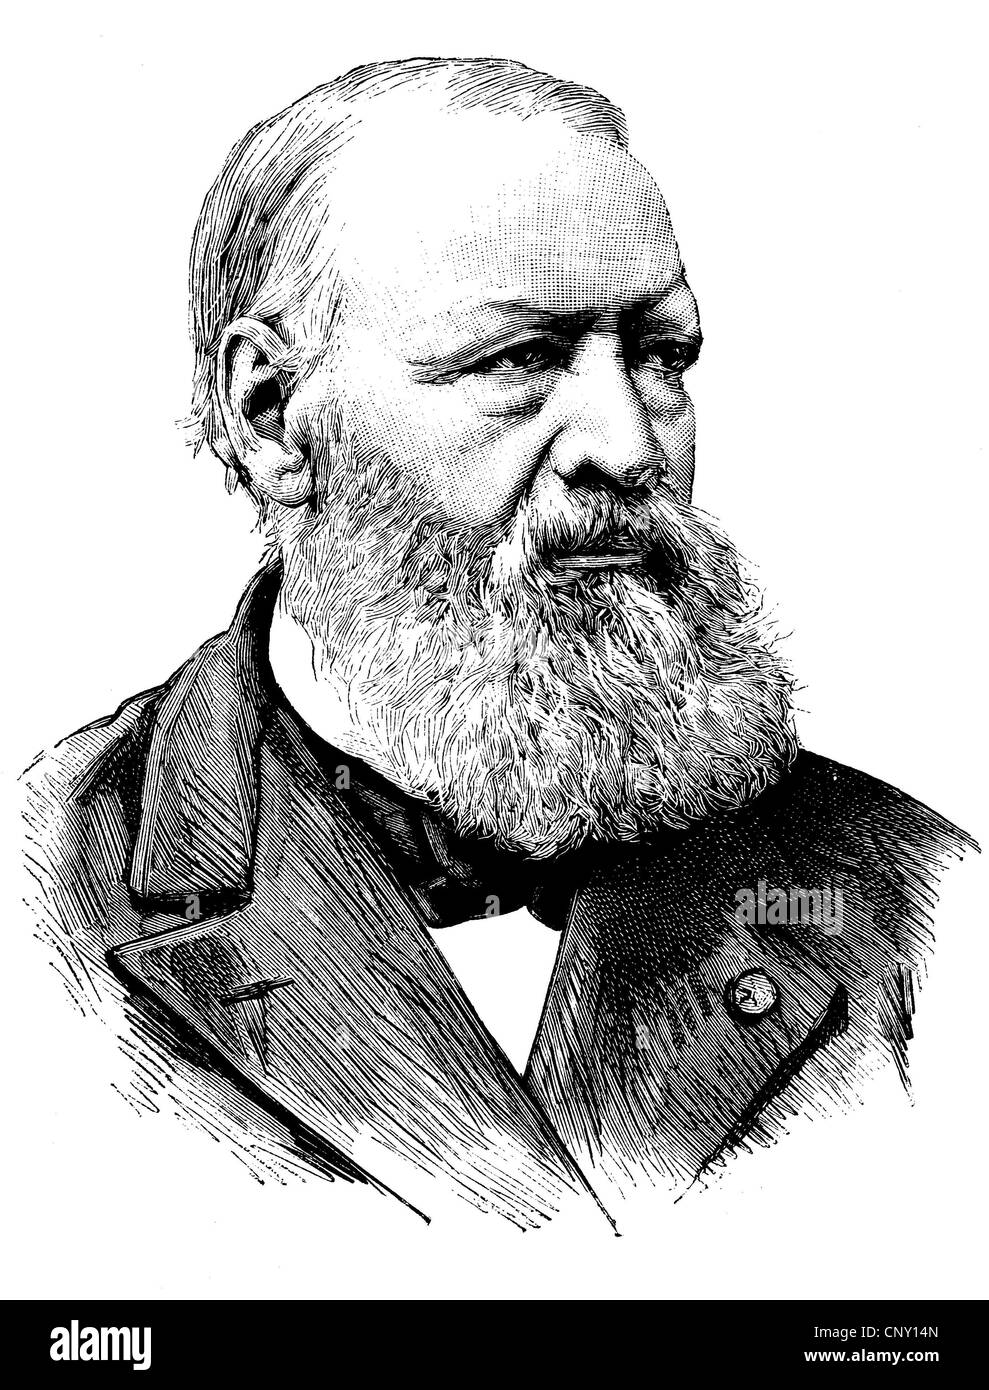 Hendrik coscienza, 1812 - 1883, un narratore fiamminga e co-fondatore della letteratura fiamminga, storica incisione, circa 1889 Foto Stock